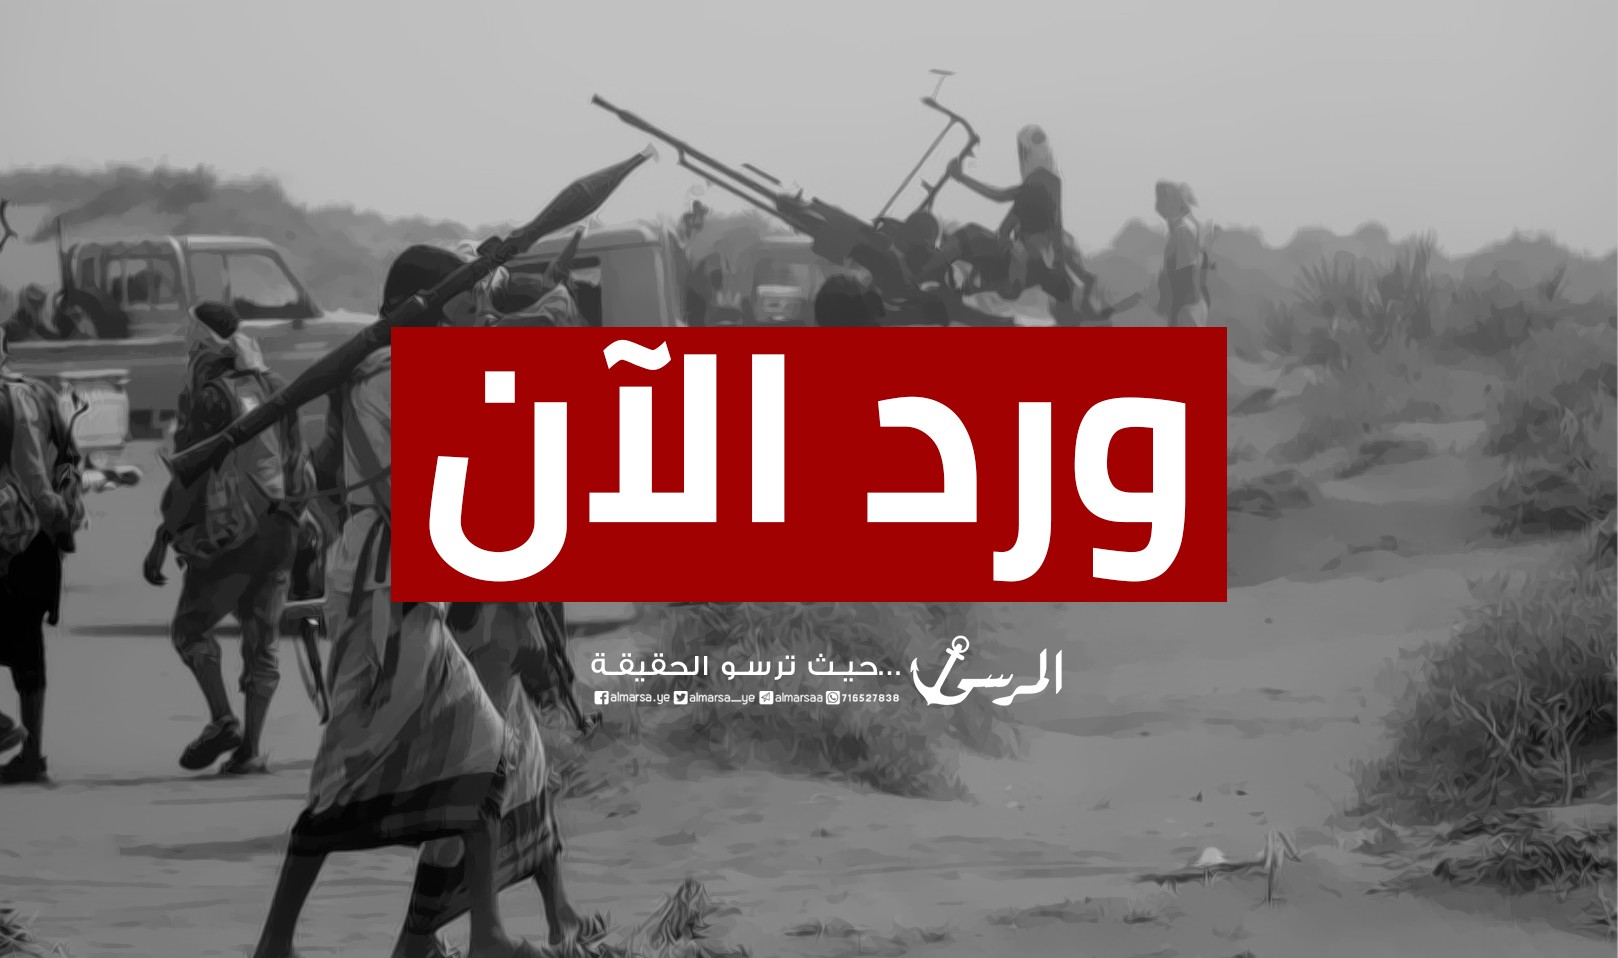 عاجل :مصادر خاصة للمرسى مصرع قائد لواء عمليات خاصة حوثي في الحديدة